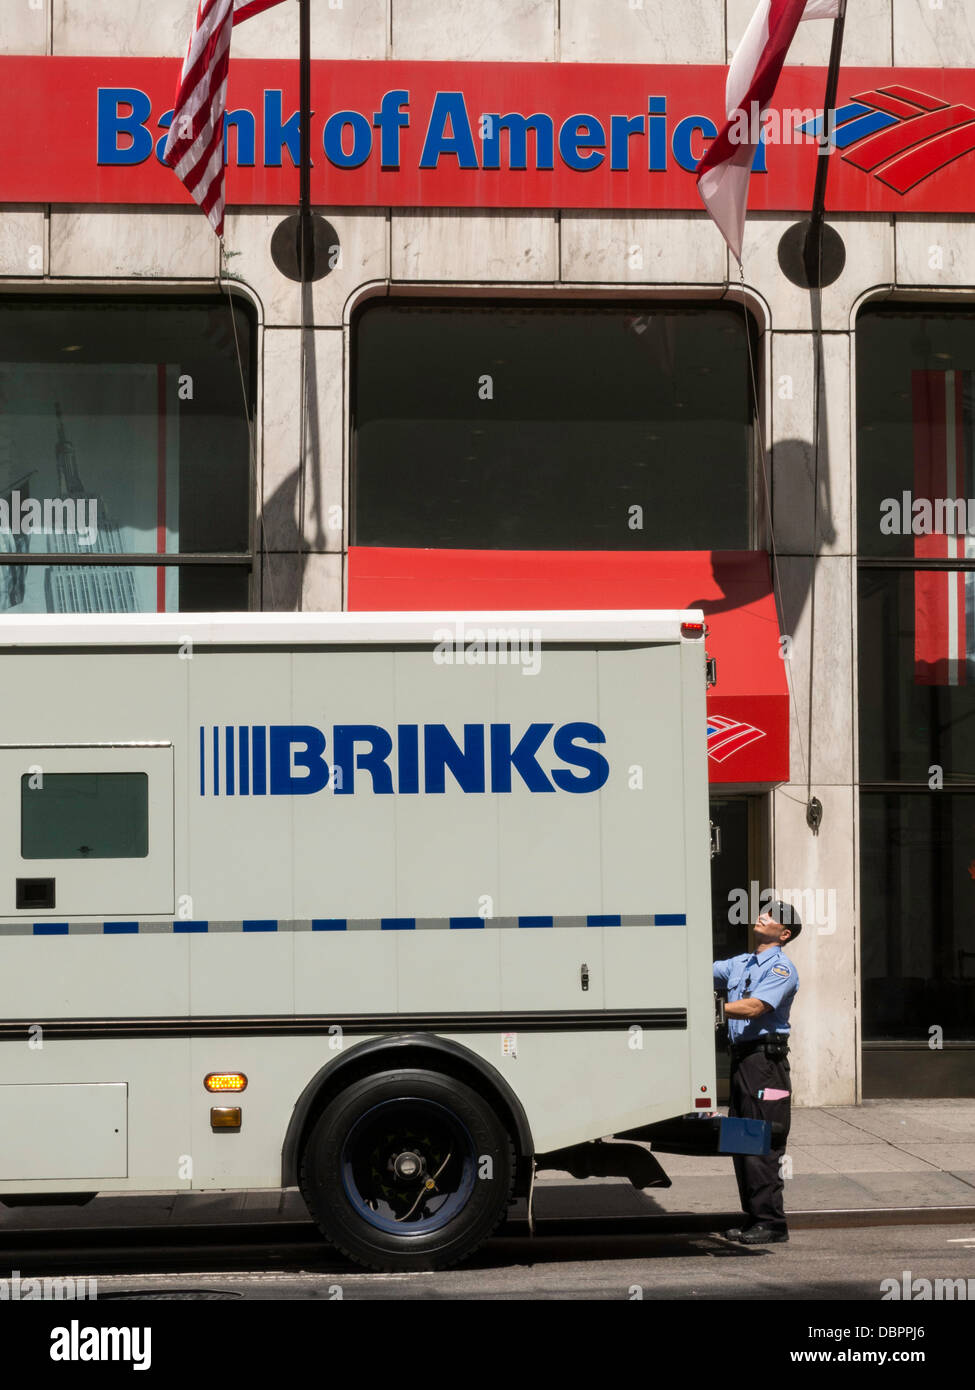 Brinks gepanzerten Lastwagen und Guard außen Bank of America Branch, NYC, USA Stockfoto